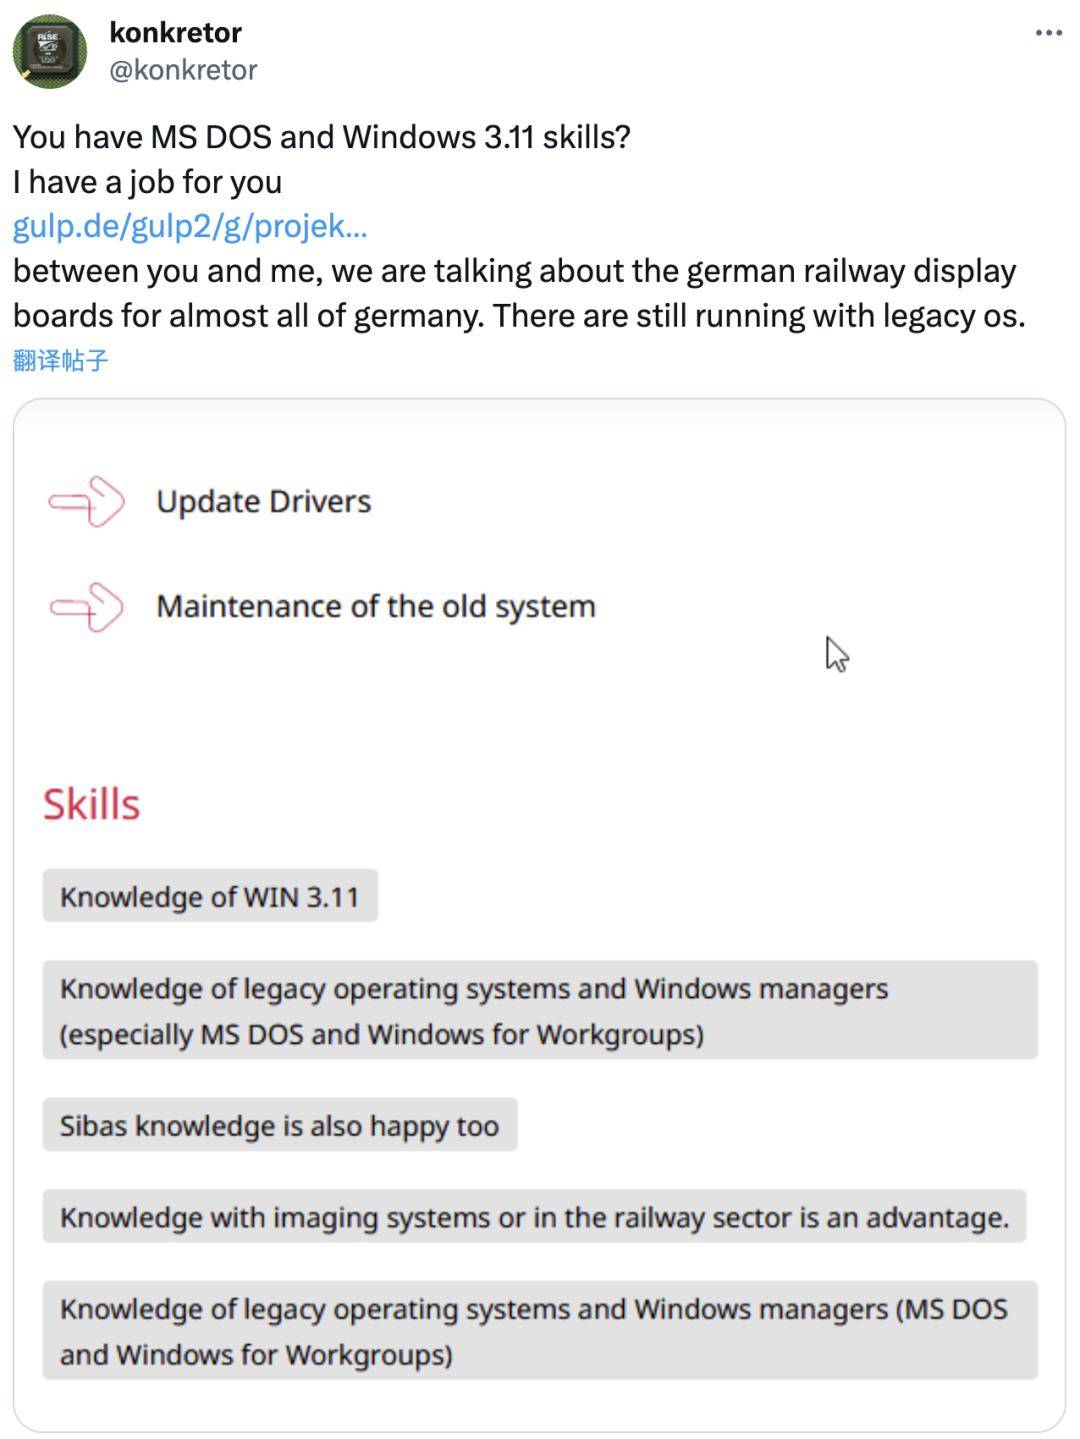 时空错乱？德国铁路公司招聘熟悉MS-DOS和Windows 3.11的IT管理员